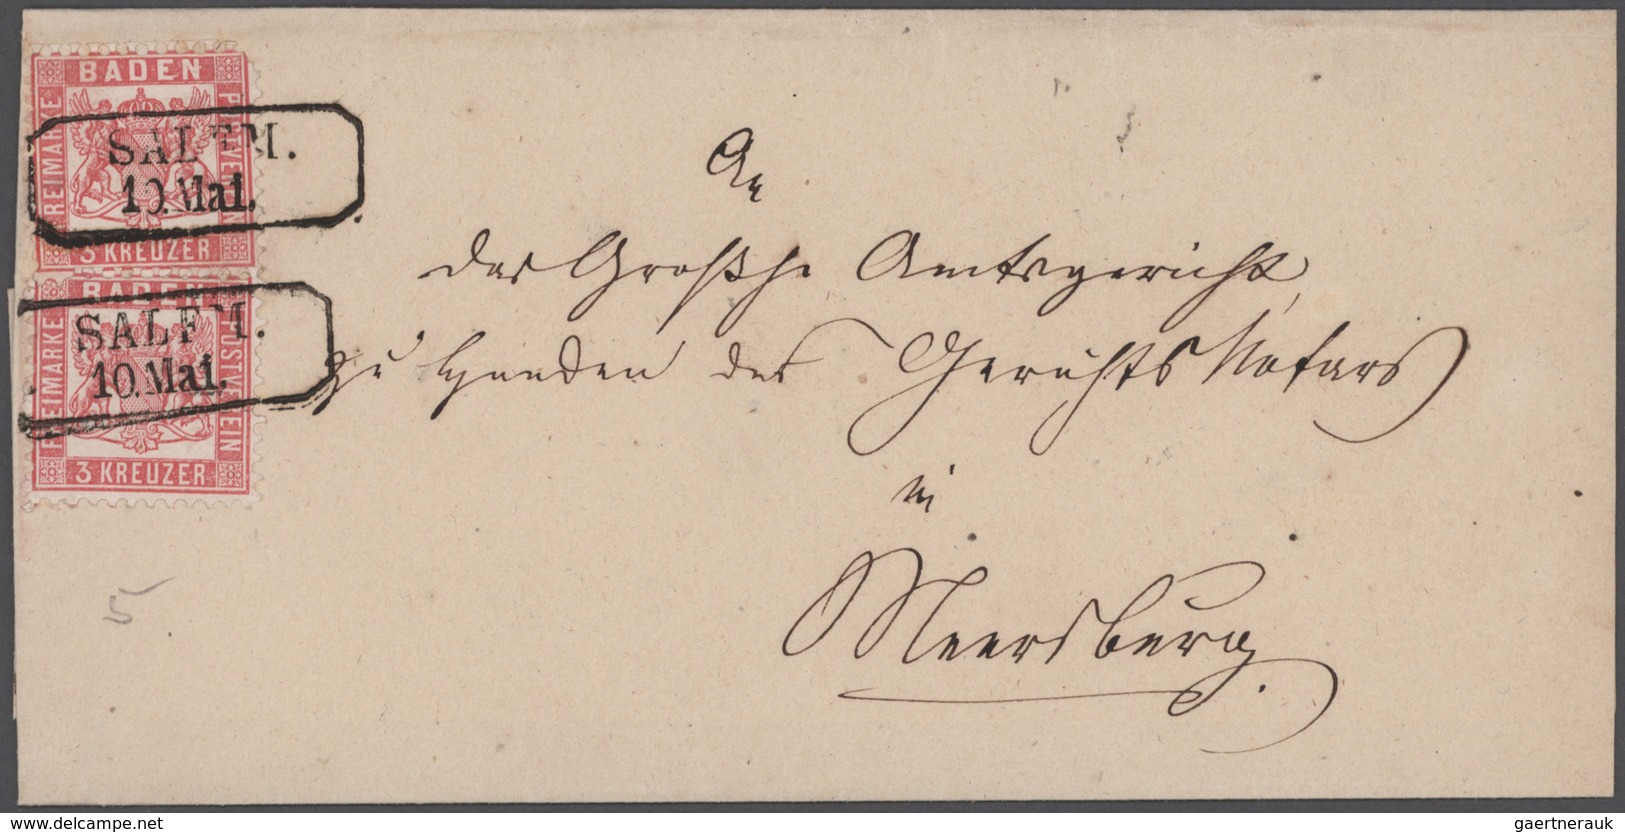 Baden - Marken und Briefe: 1855-1869, Partie mit 38 Briefen und Ganzsachen, dabei zahlreiche Postabl